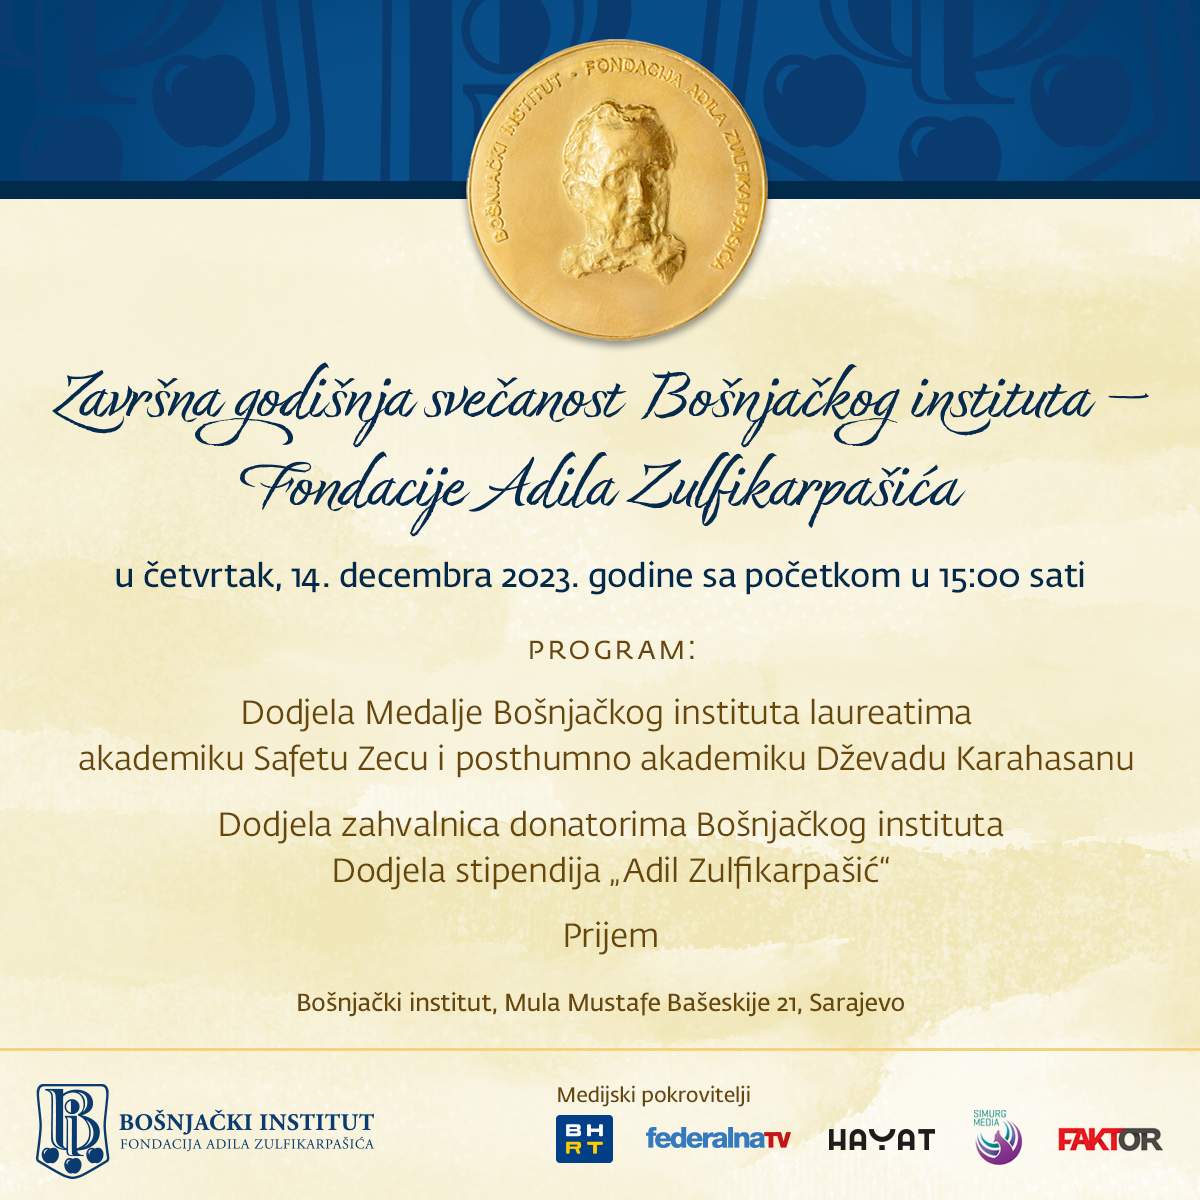 Plakat-objava-1200x1200-1-1.jpg - Bošnjački institut dodjeljuje Medalju akademiku Safetu Zecu i posthumno akademiku Dževadu Karahasanu